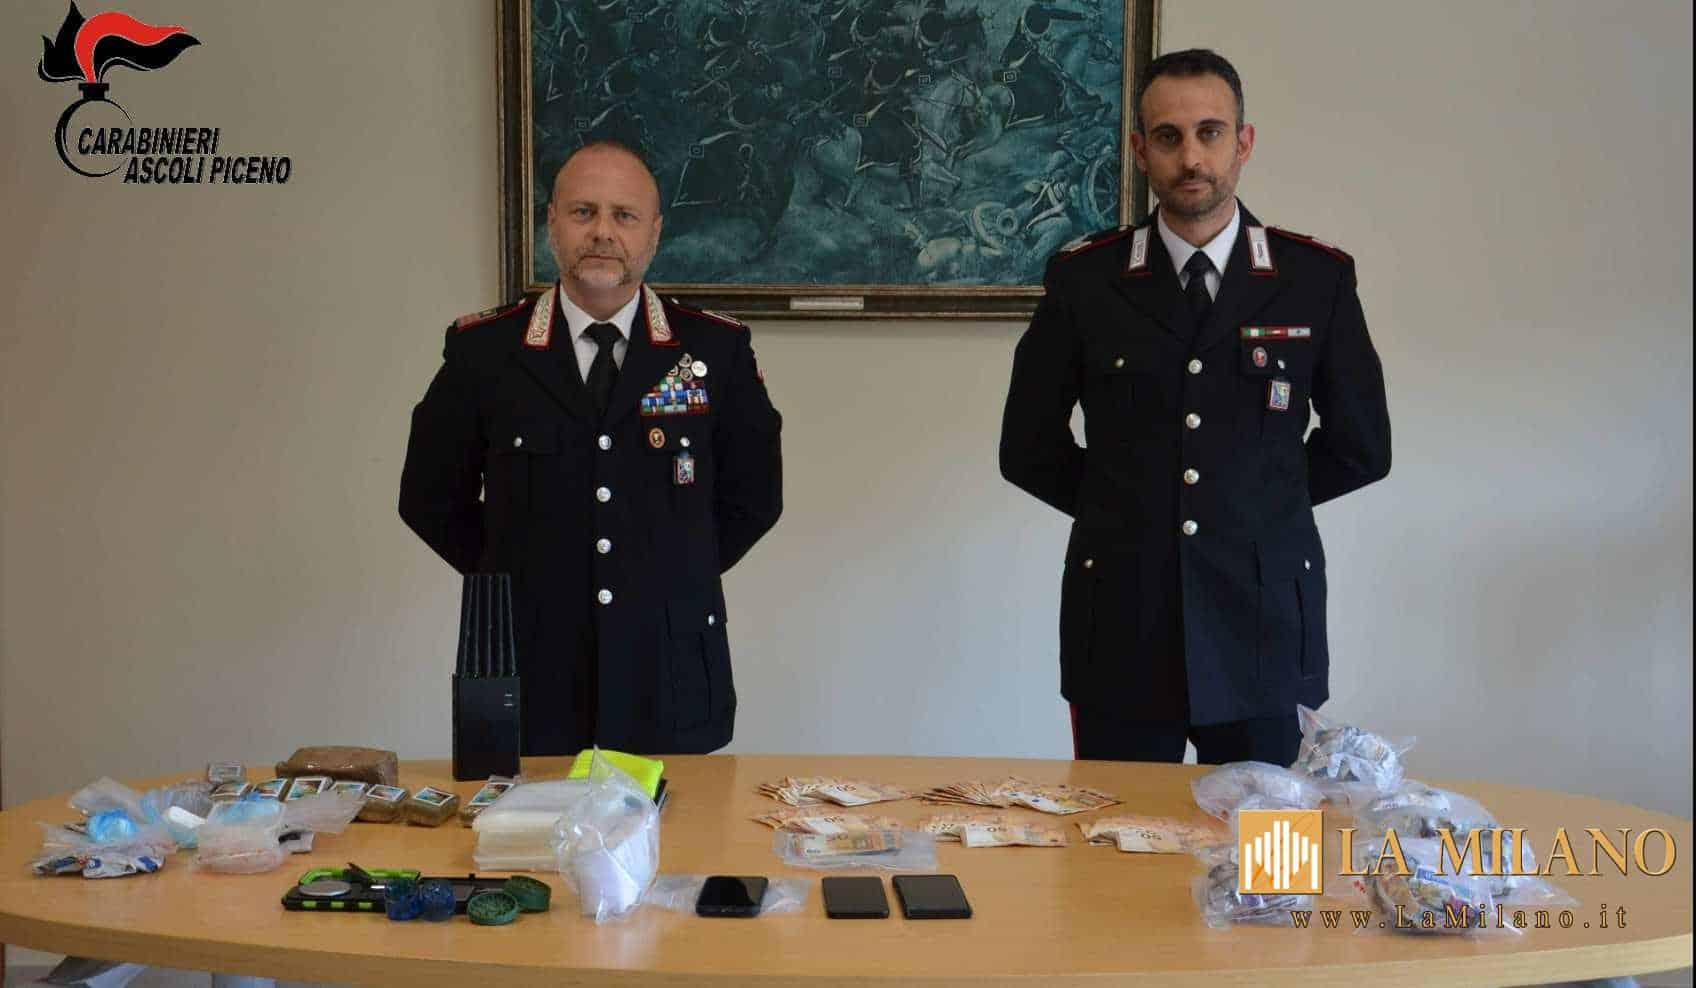 Ascoli Piceno. Duplice operazione antidroga dei Carabinieri: dopo le perquisizioni sono stati rinvenuti 1 kg di hashish e 700 grammi di cocaina. 2 arresti.